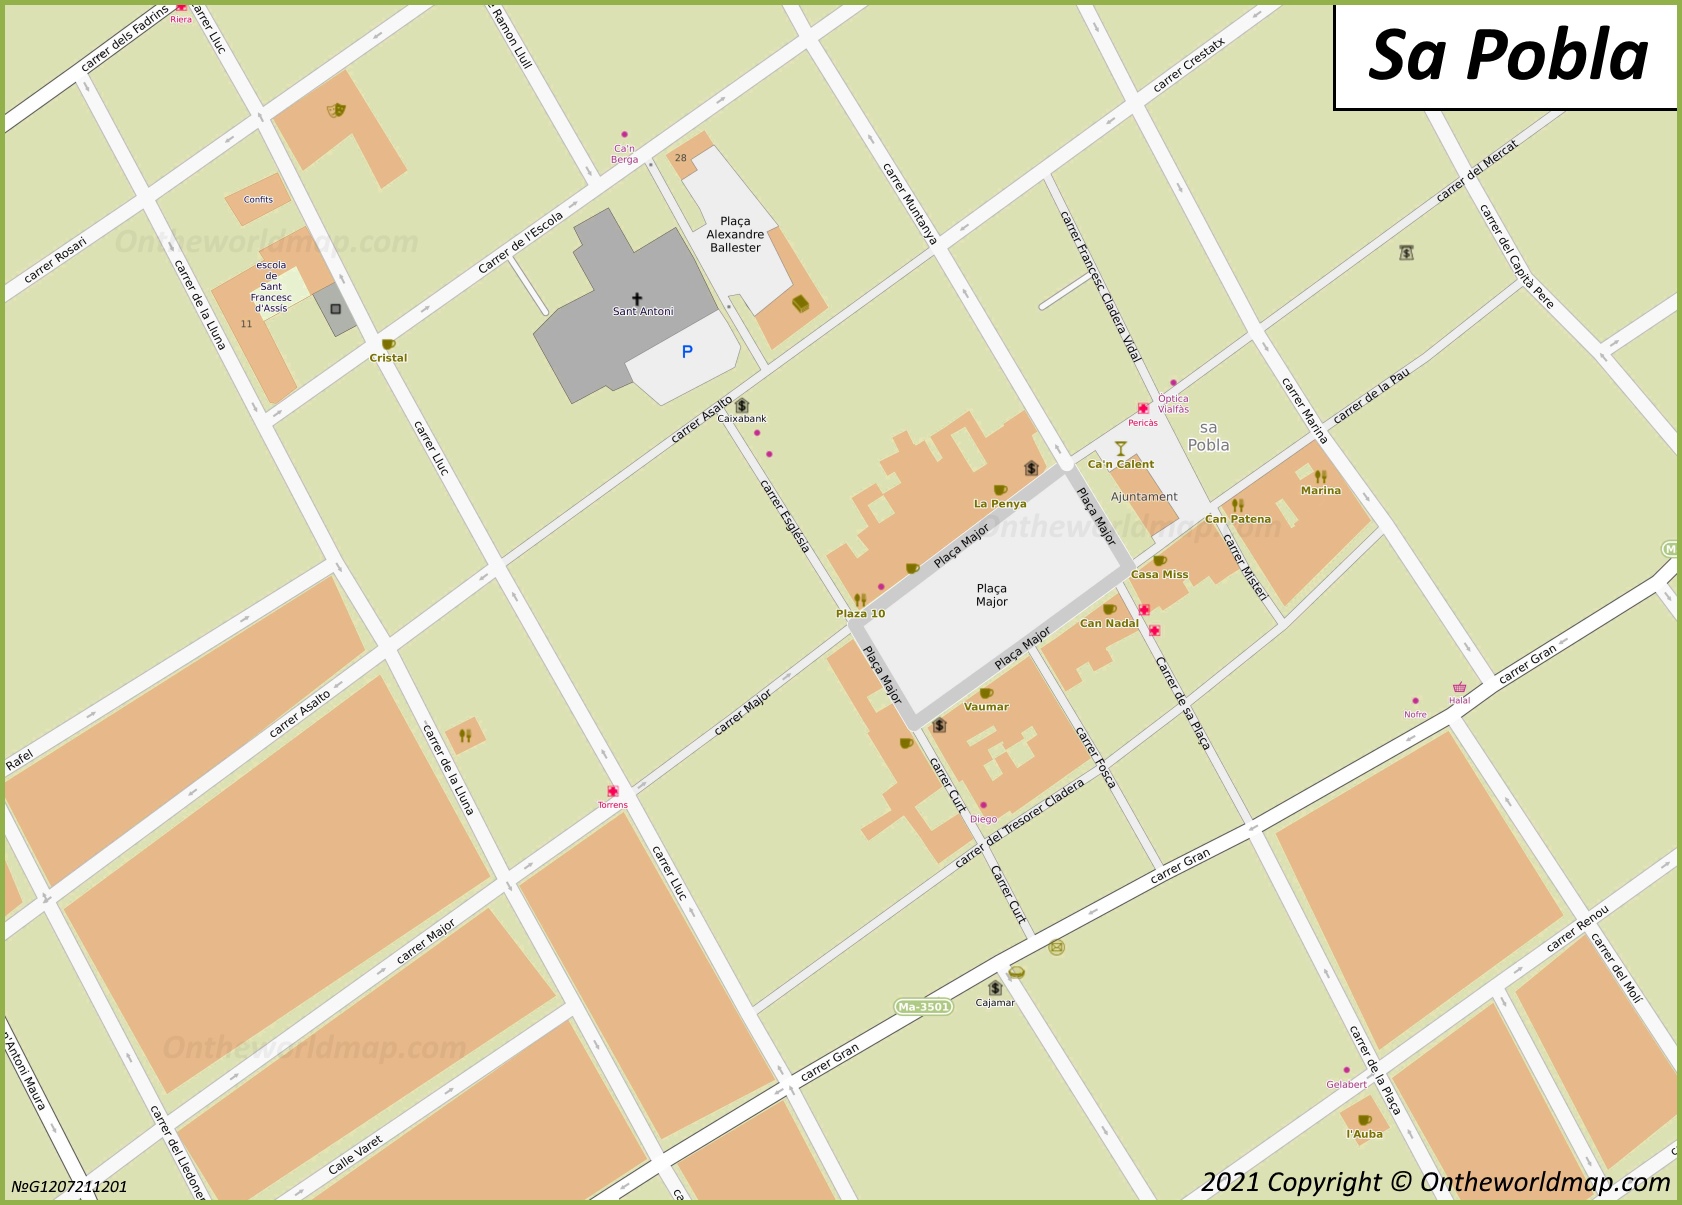 Sa Pobla Town Center Map